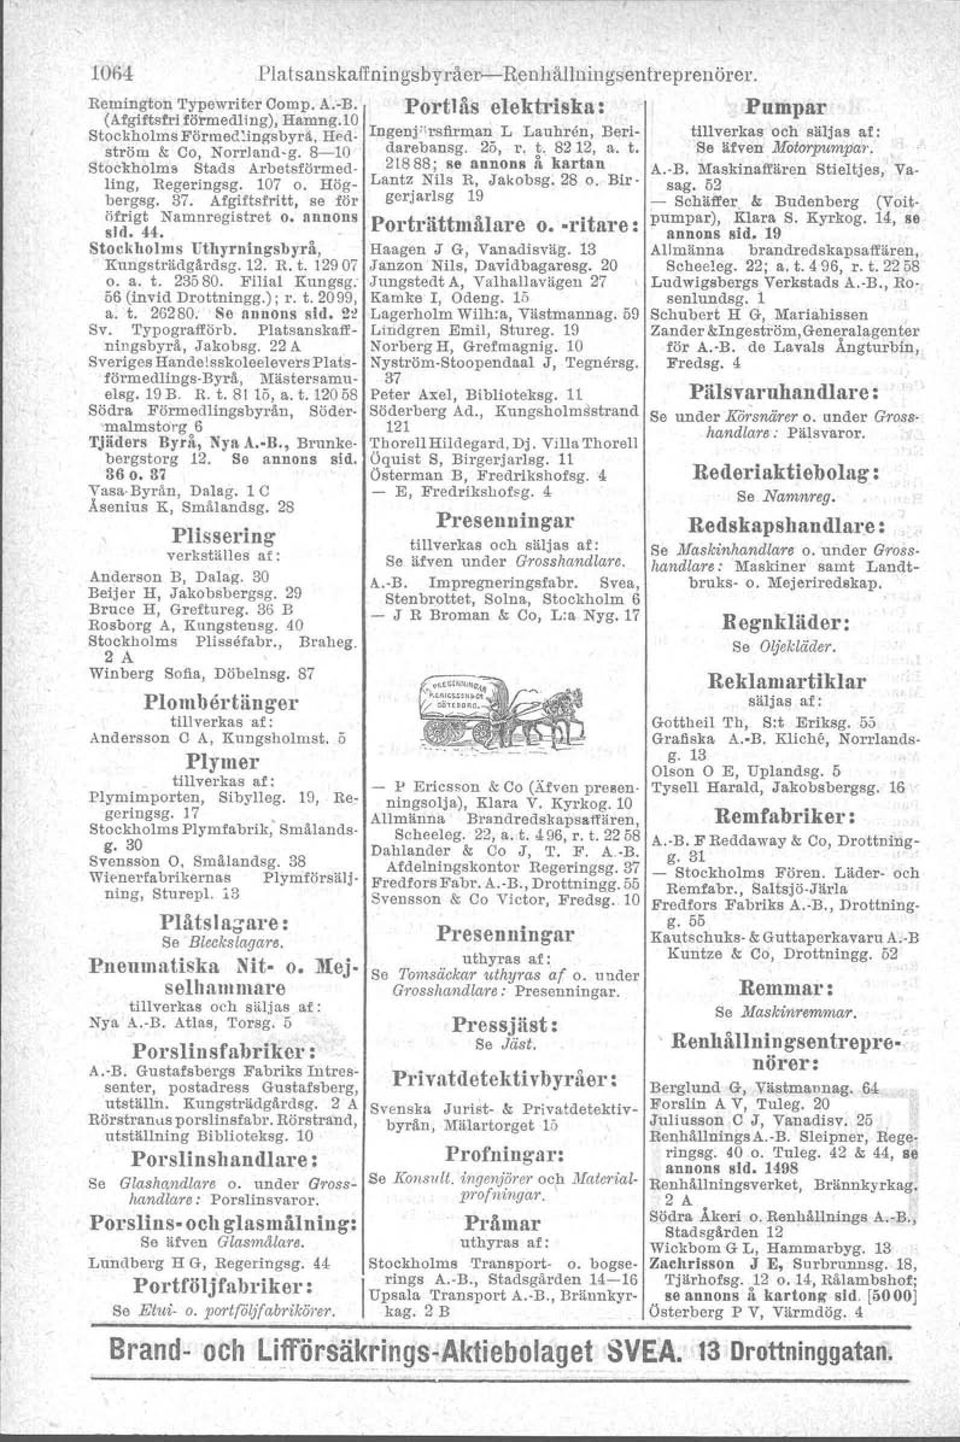 Filial Kungsg, 56 (invid Drottningg.) ; r. t. 2099, a. t. 26280.. Se annons sid. 2~ Sv. Typografförb. Platsanskaff-.niugsbyrä, Jakobsg.